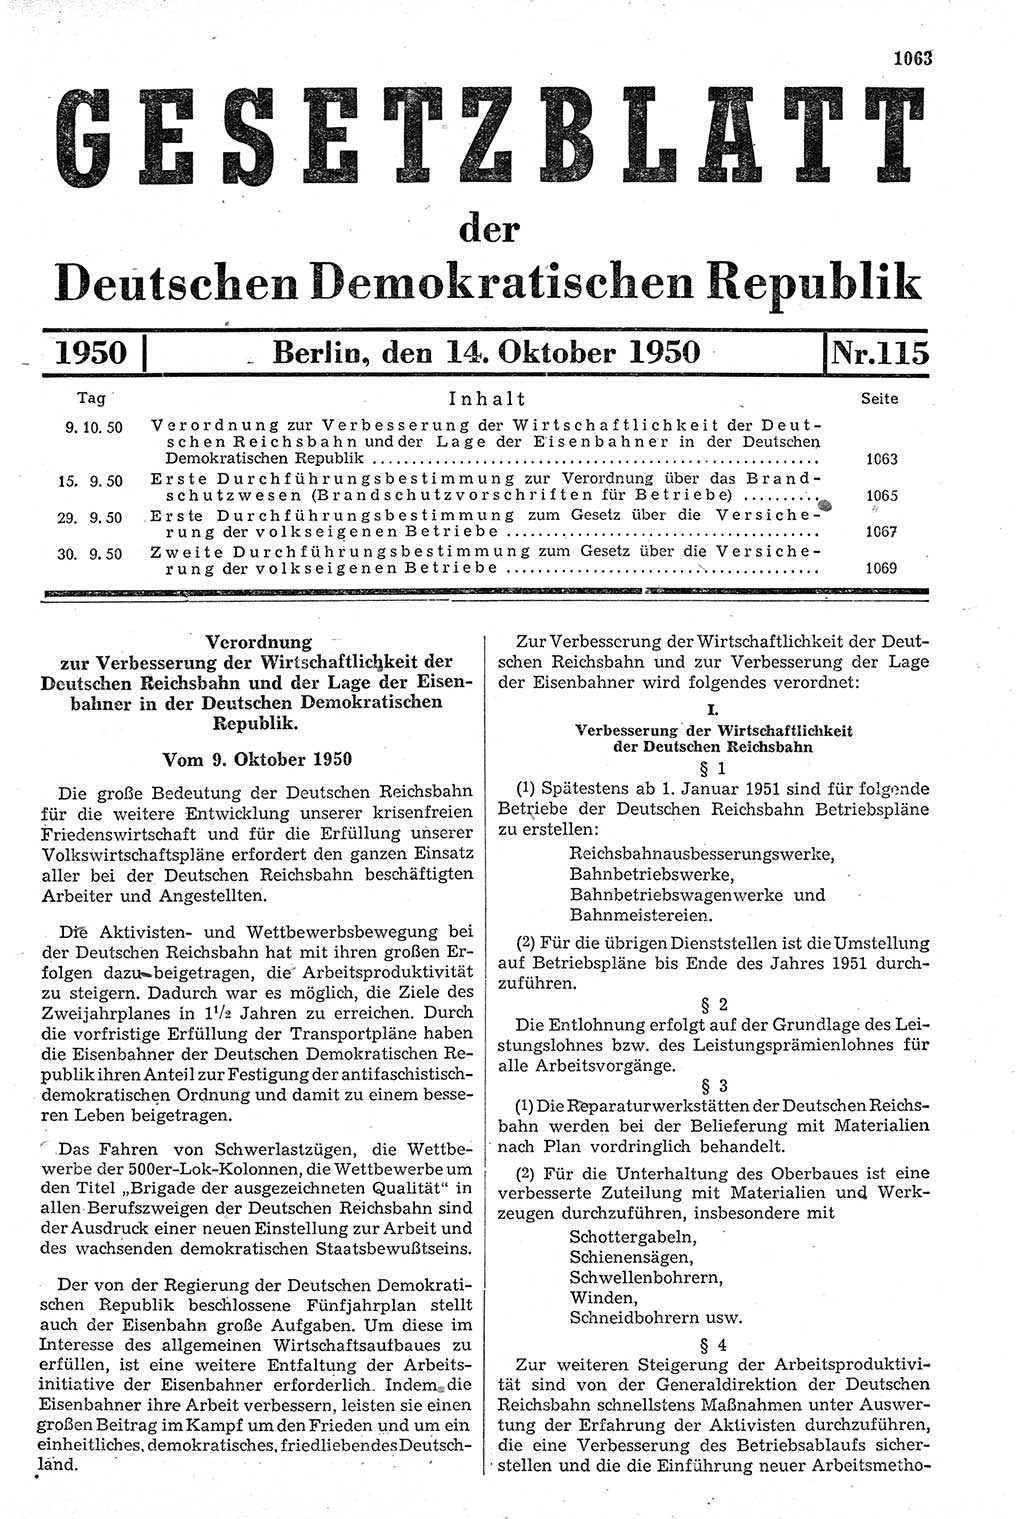 Gesetzblatt (GBl.) der Deutschen Demokratischen Republik (DDR) 1950, Seite 1063 (GBl. DDR 1950, S. 1063)